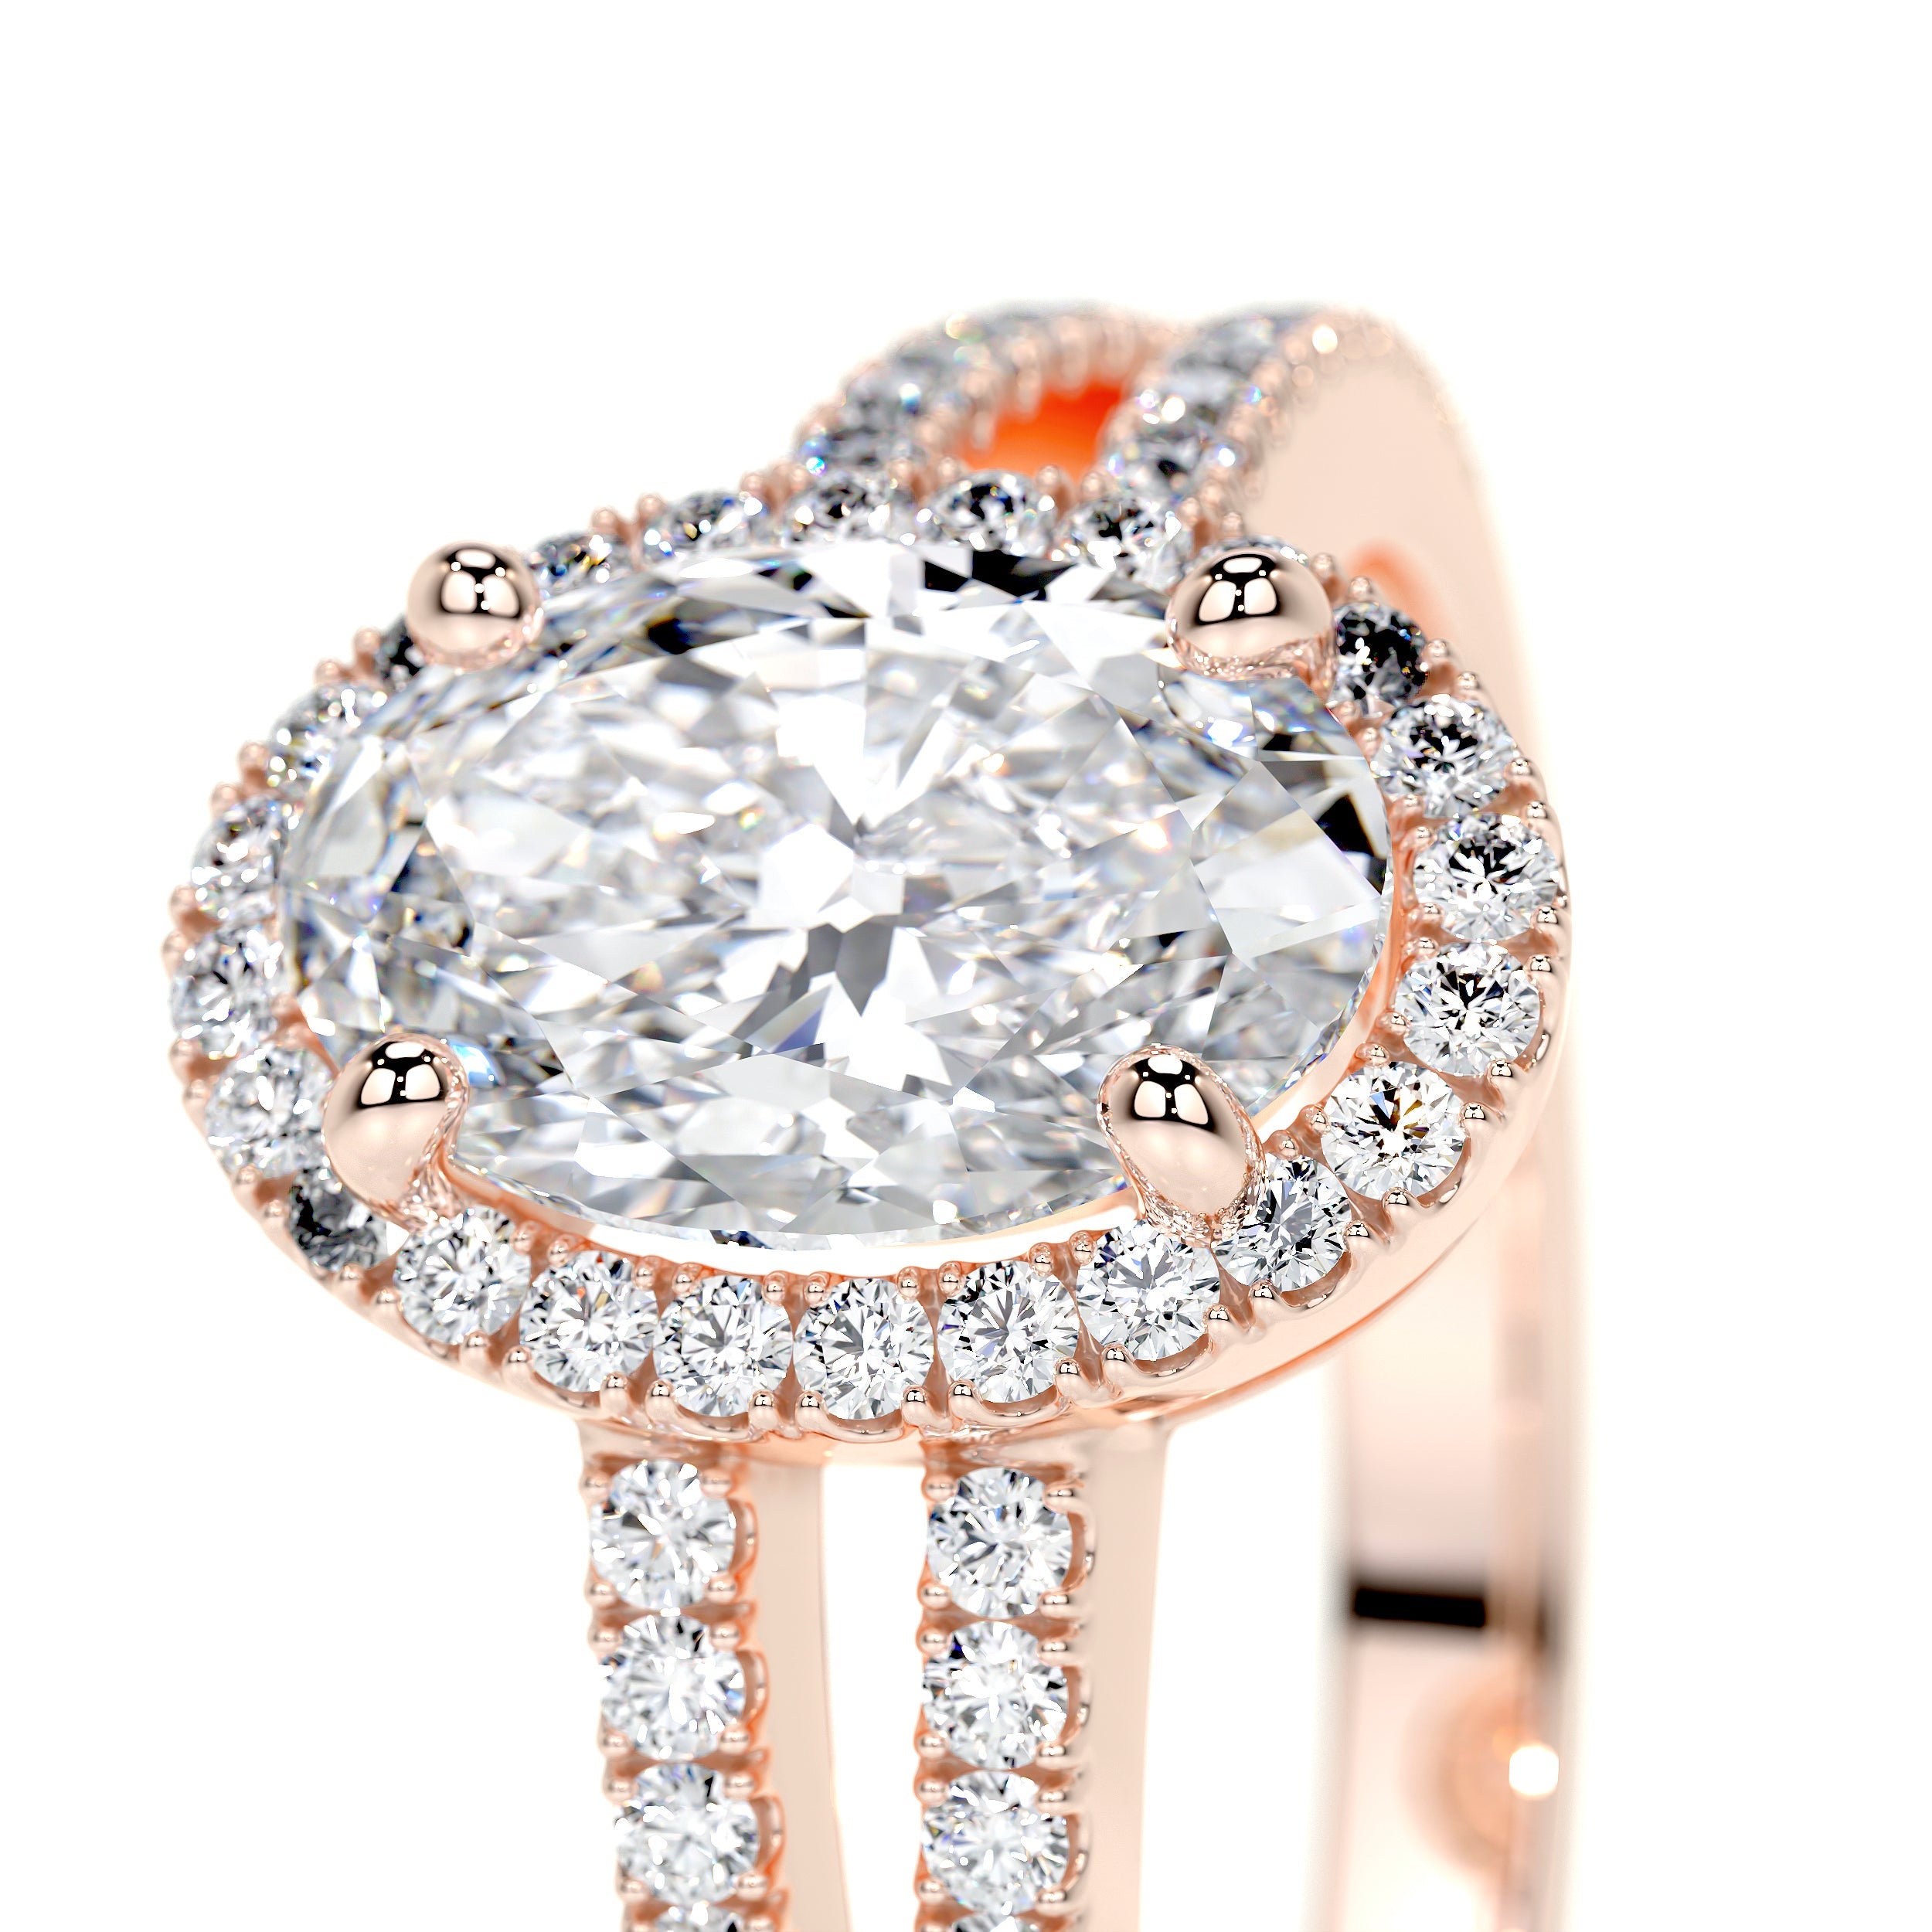 Brielle Lab Grown Diamond Ring   (1.2 Carat) -14K Rose Gold